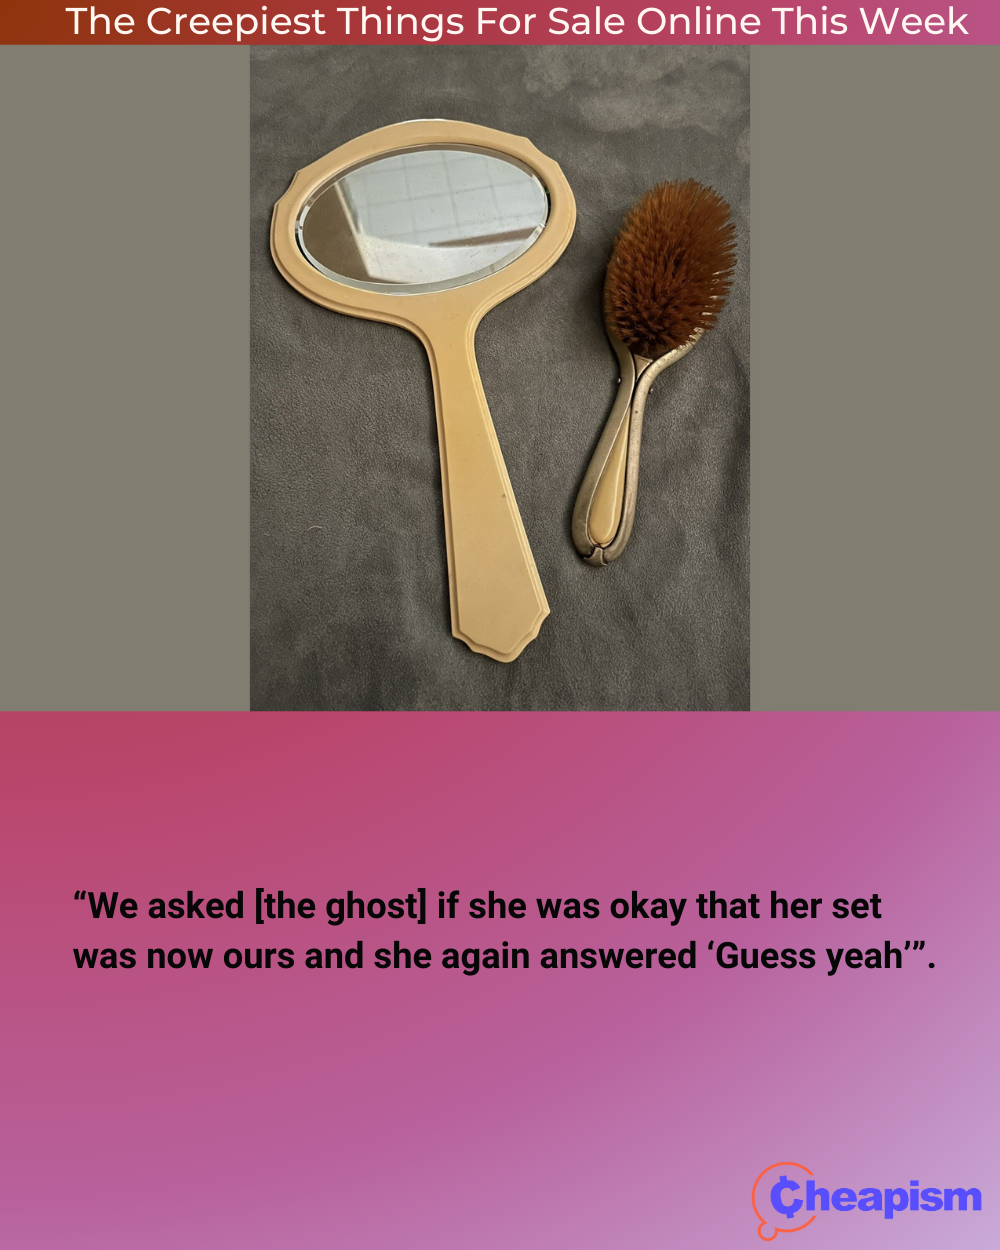 Haunted Mirror and Hair Brush